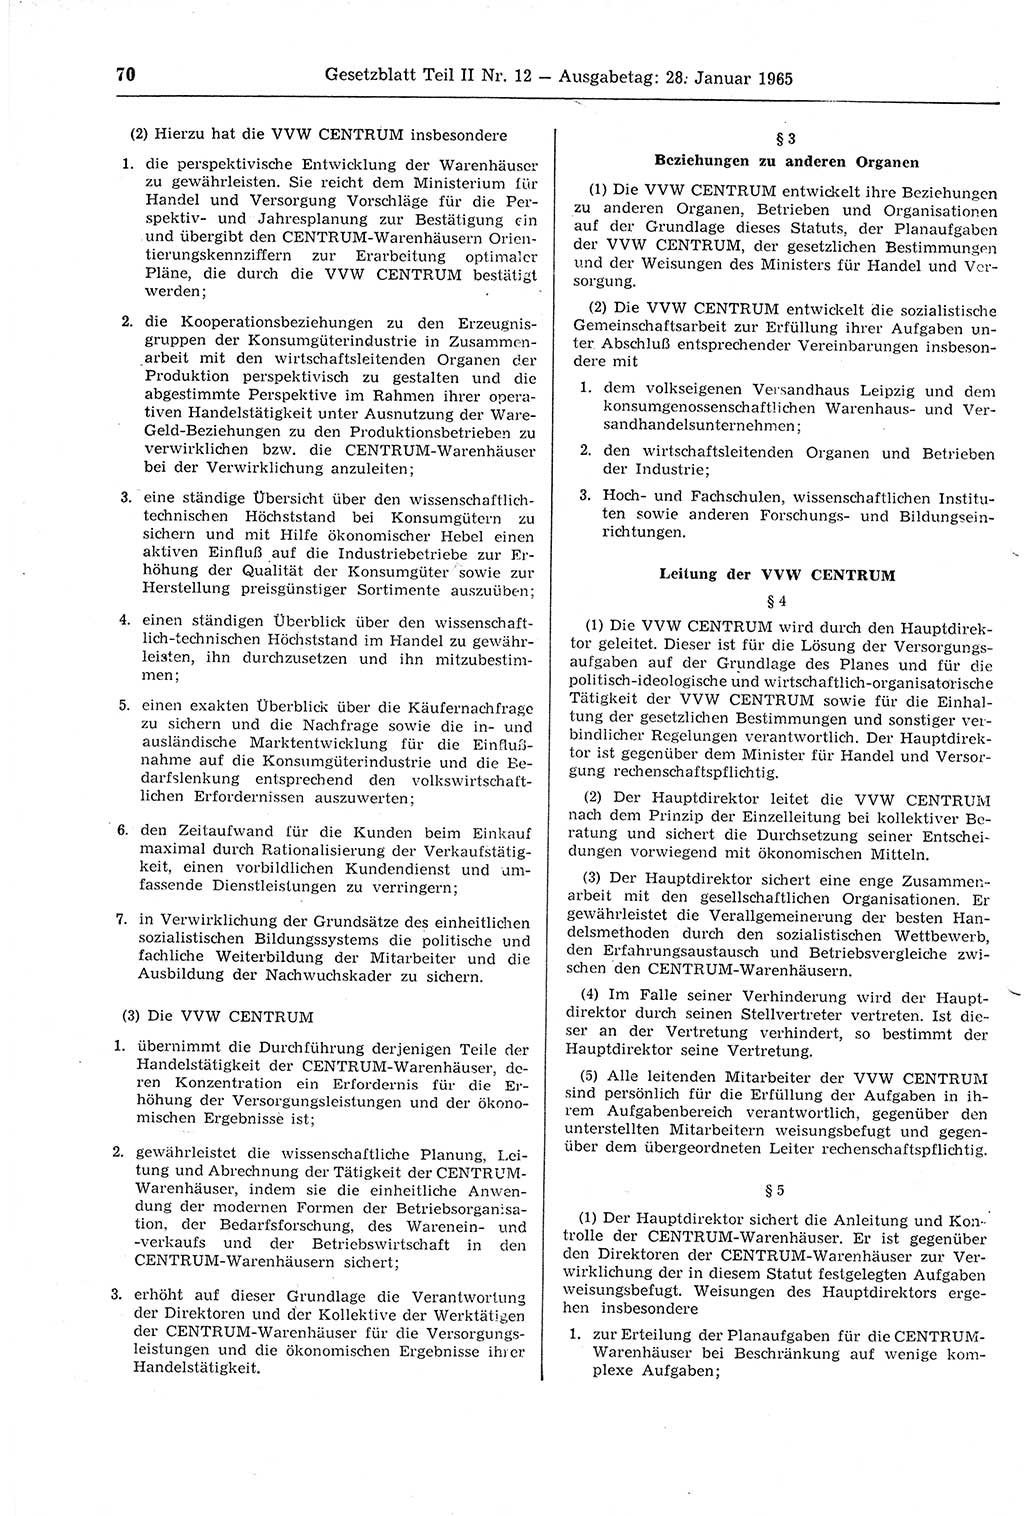 Gesetzblatt (GBl.) der Deutschen Demokratischen Republik (DDR) Teil ⅠⅠ 1965, Seite 70 (GBl. DDR ⅠⅠ 1965, S. 70)